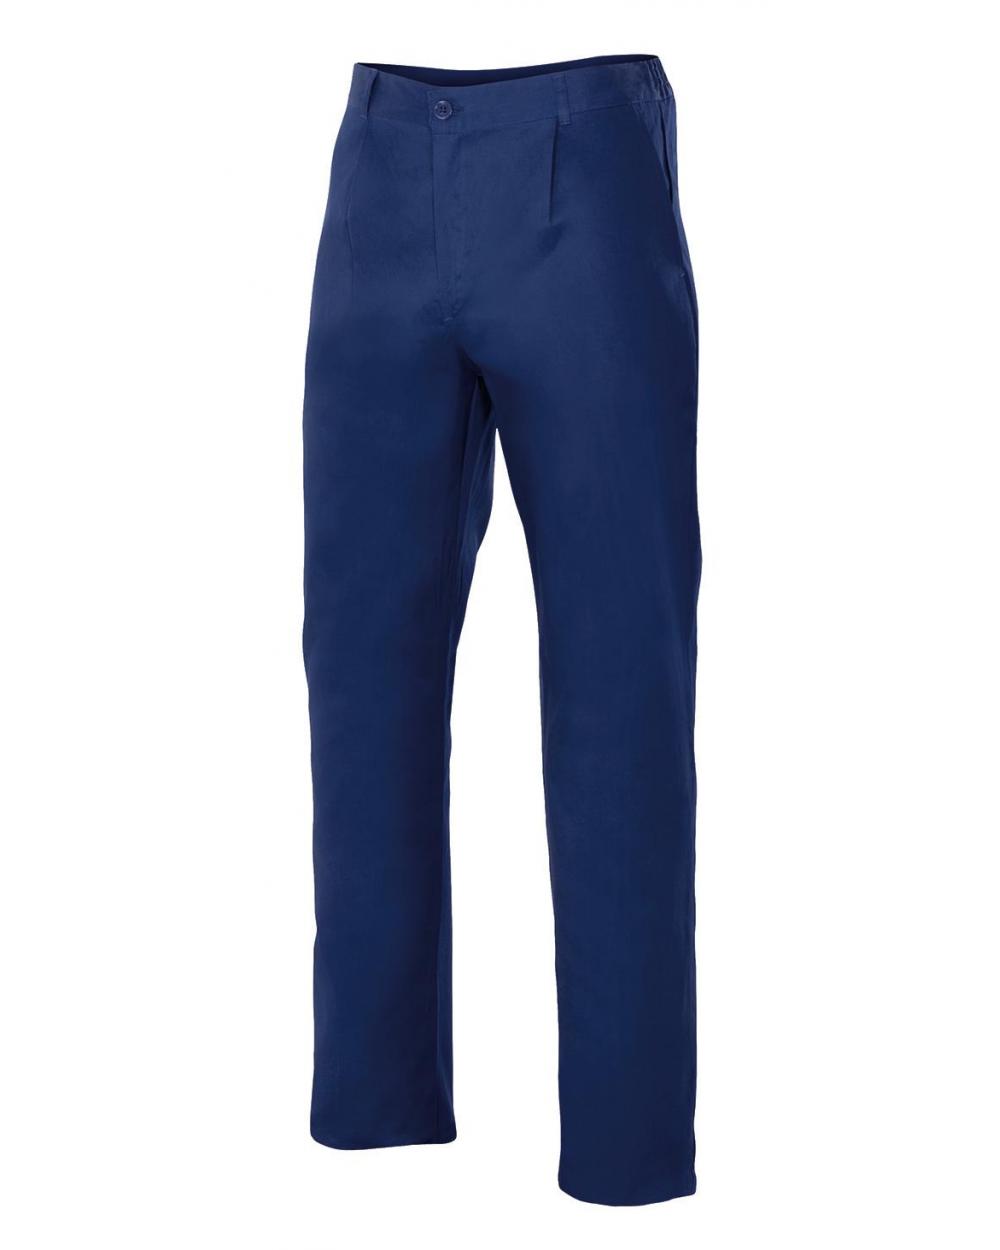 Comprar Pantalón de algodon serie 342 online barato Azul Marino